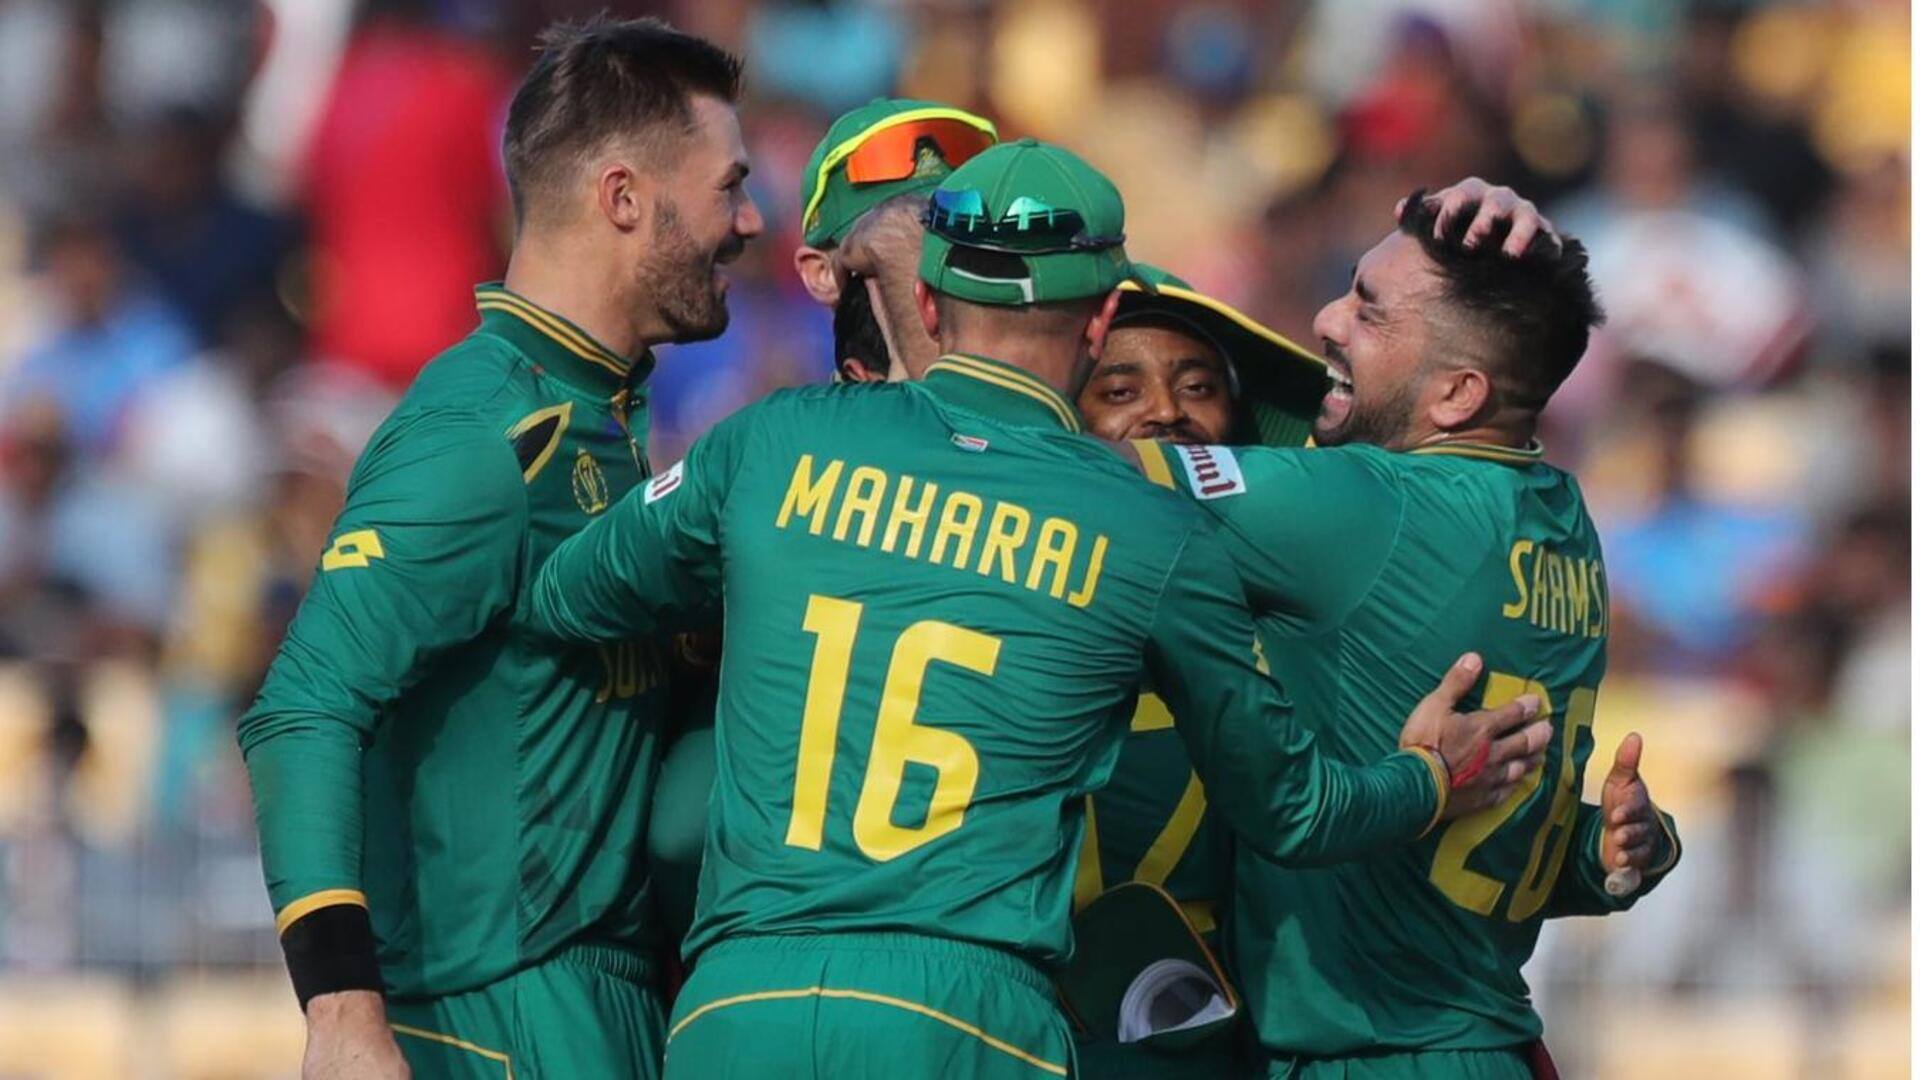 पाकिस्तान बनाम दक्षिण अफ्रीका: मार्को येन्सन की वनडे करियर की दूसरी सर्वश्रेष्ठ गेंदबाजी, चटकाए 3 विकेट